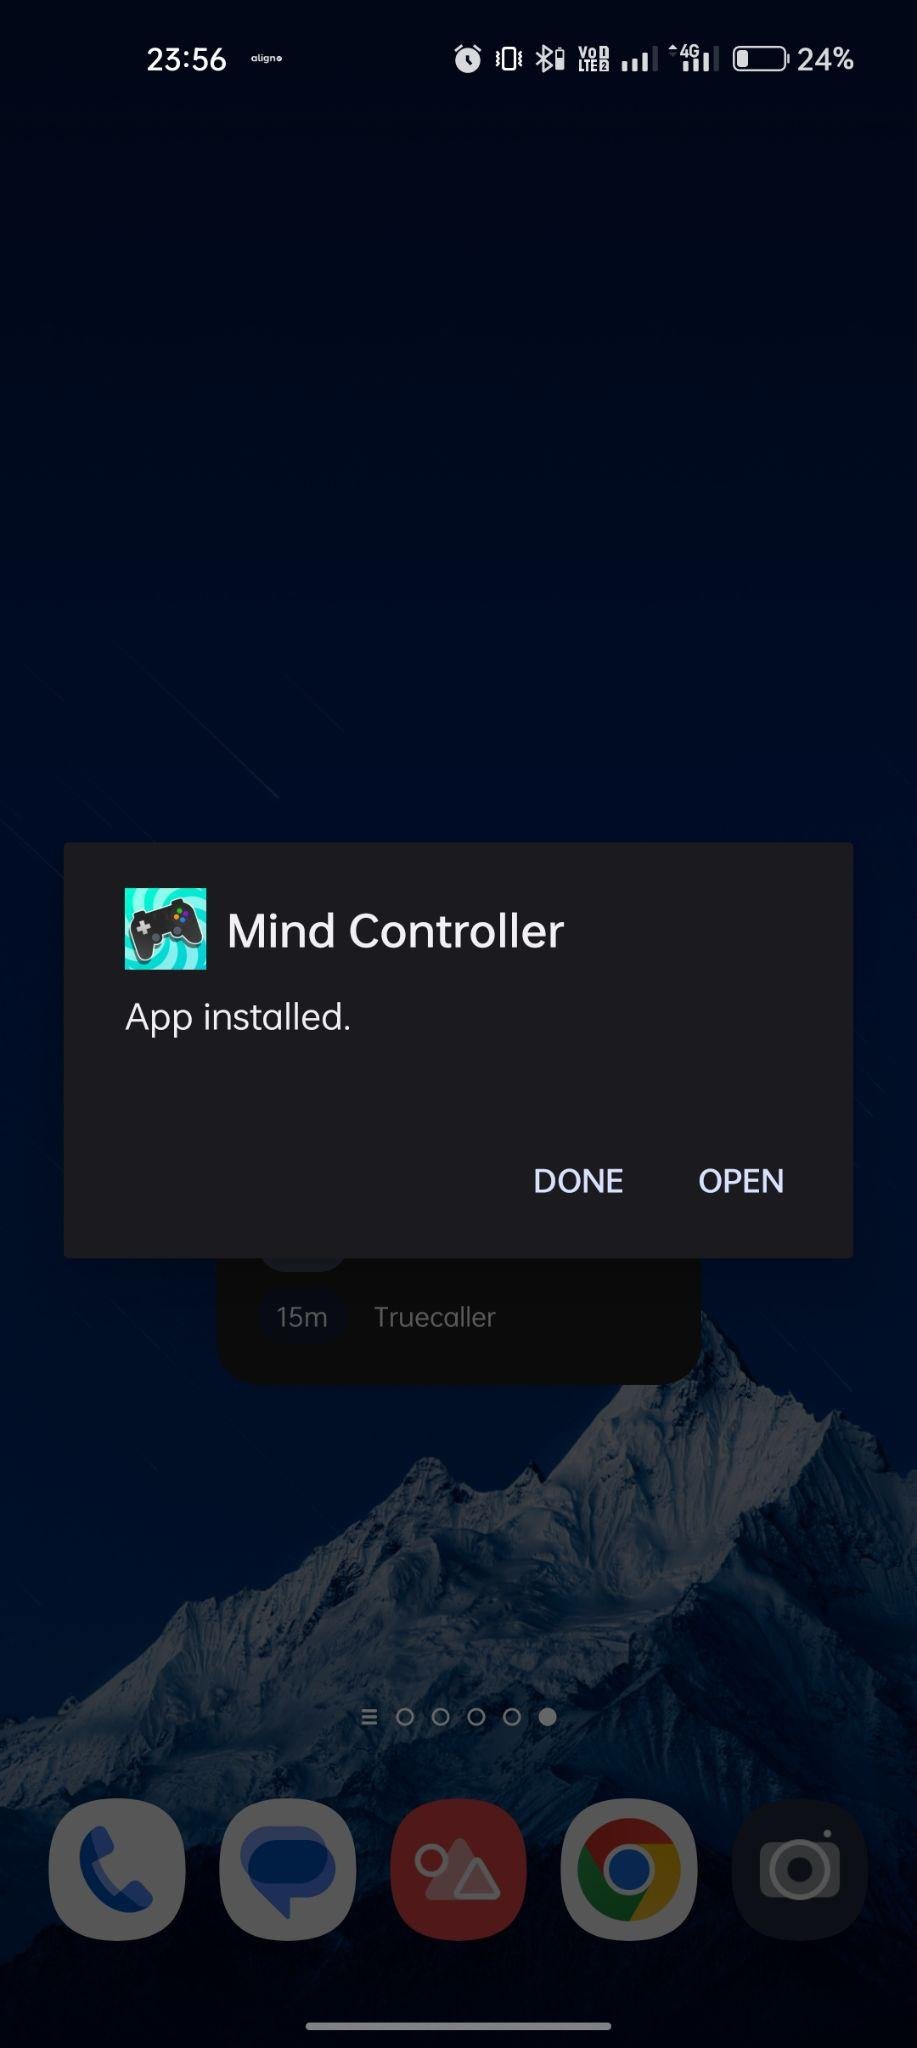 Mind Controller apk installed